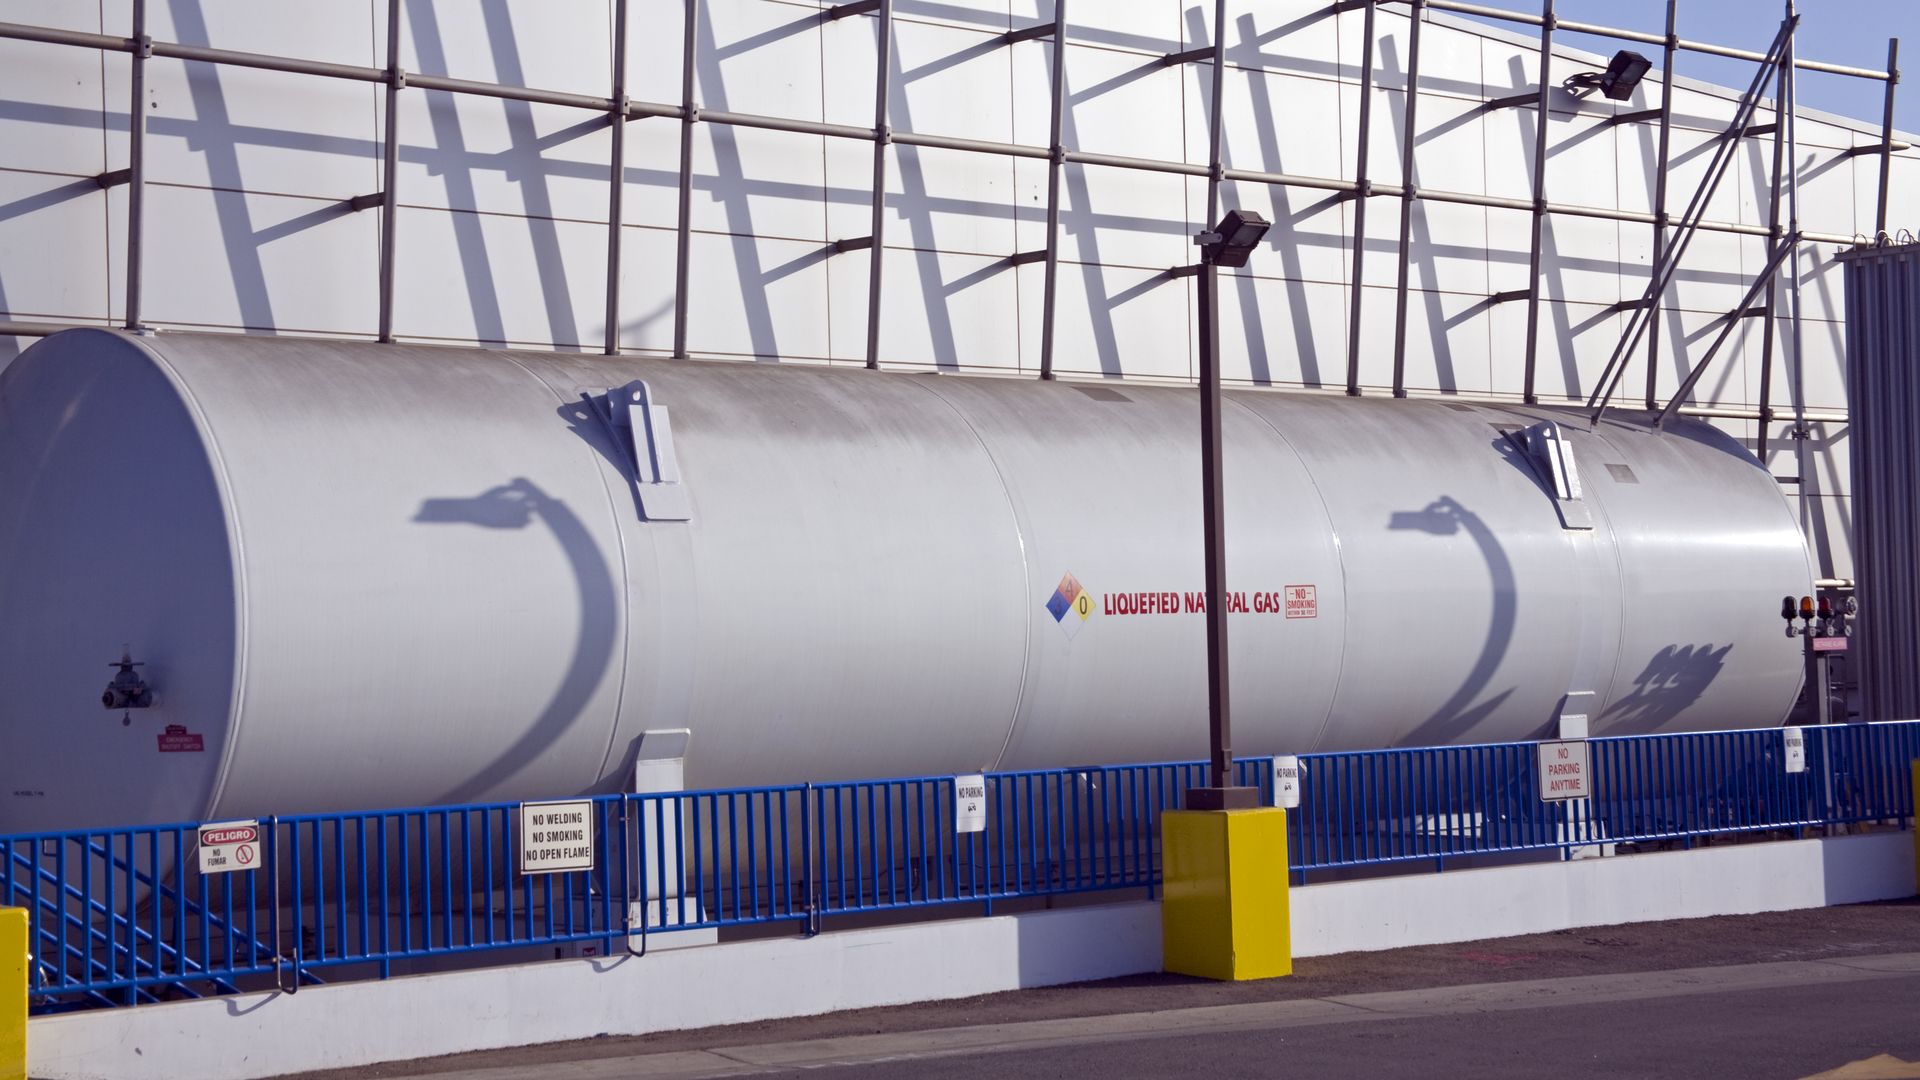 Liquified Natural Gas (LNG) refueling station at Big Blue Bus Terminal. Santa Monica, Los Angeles, California,